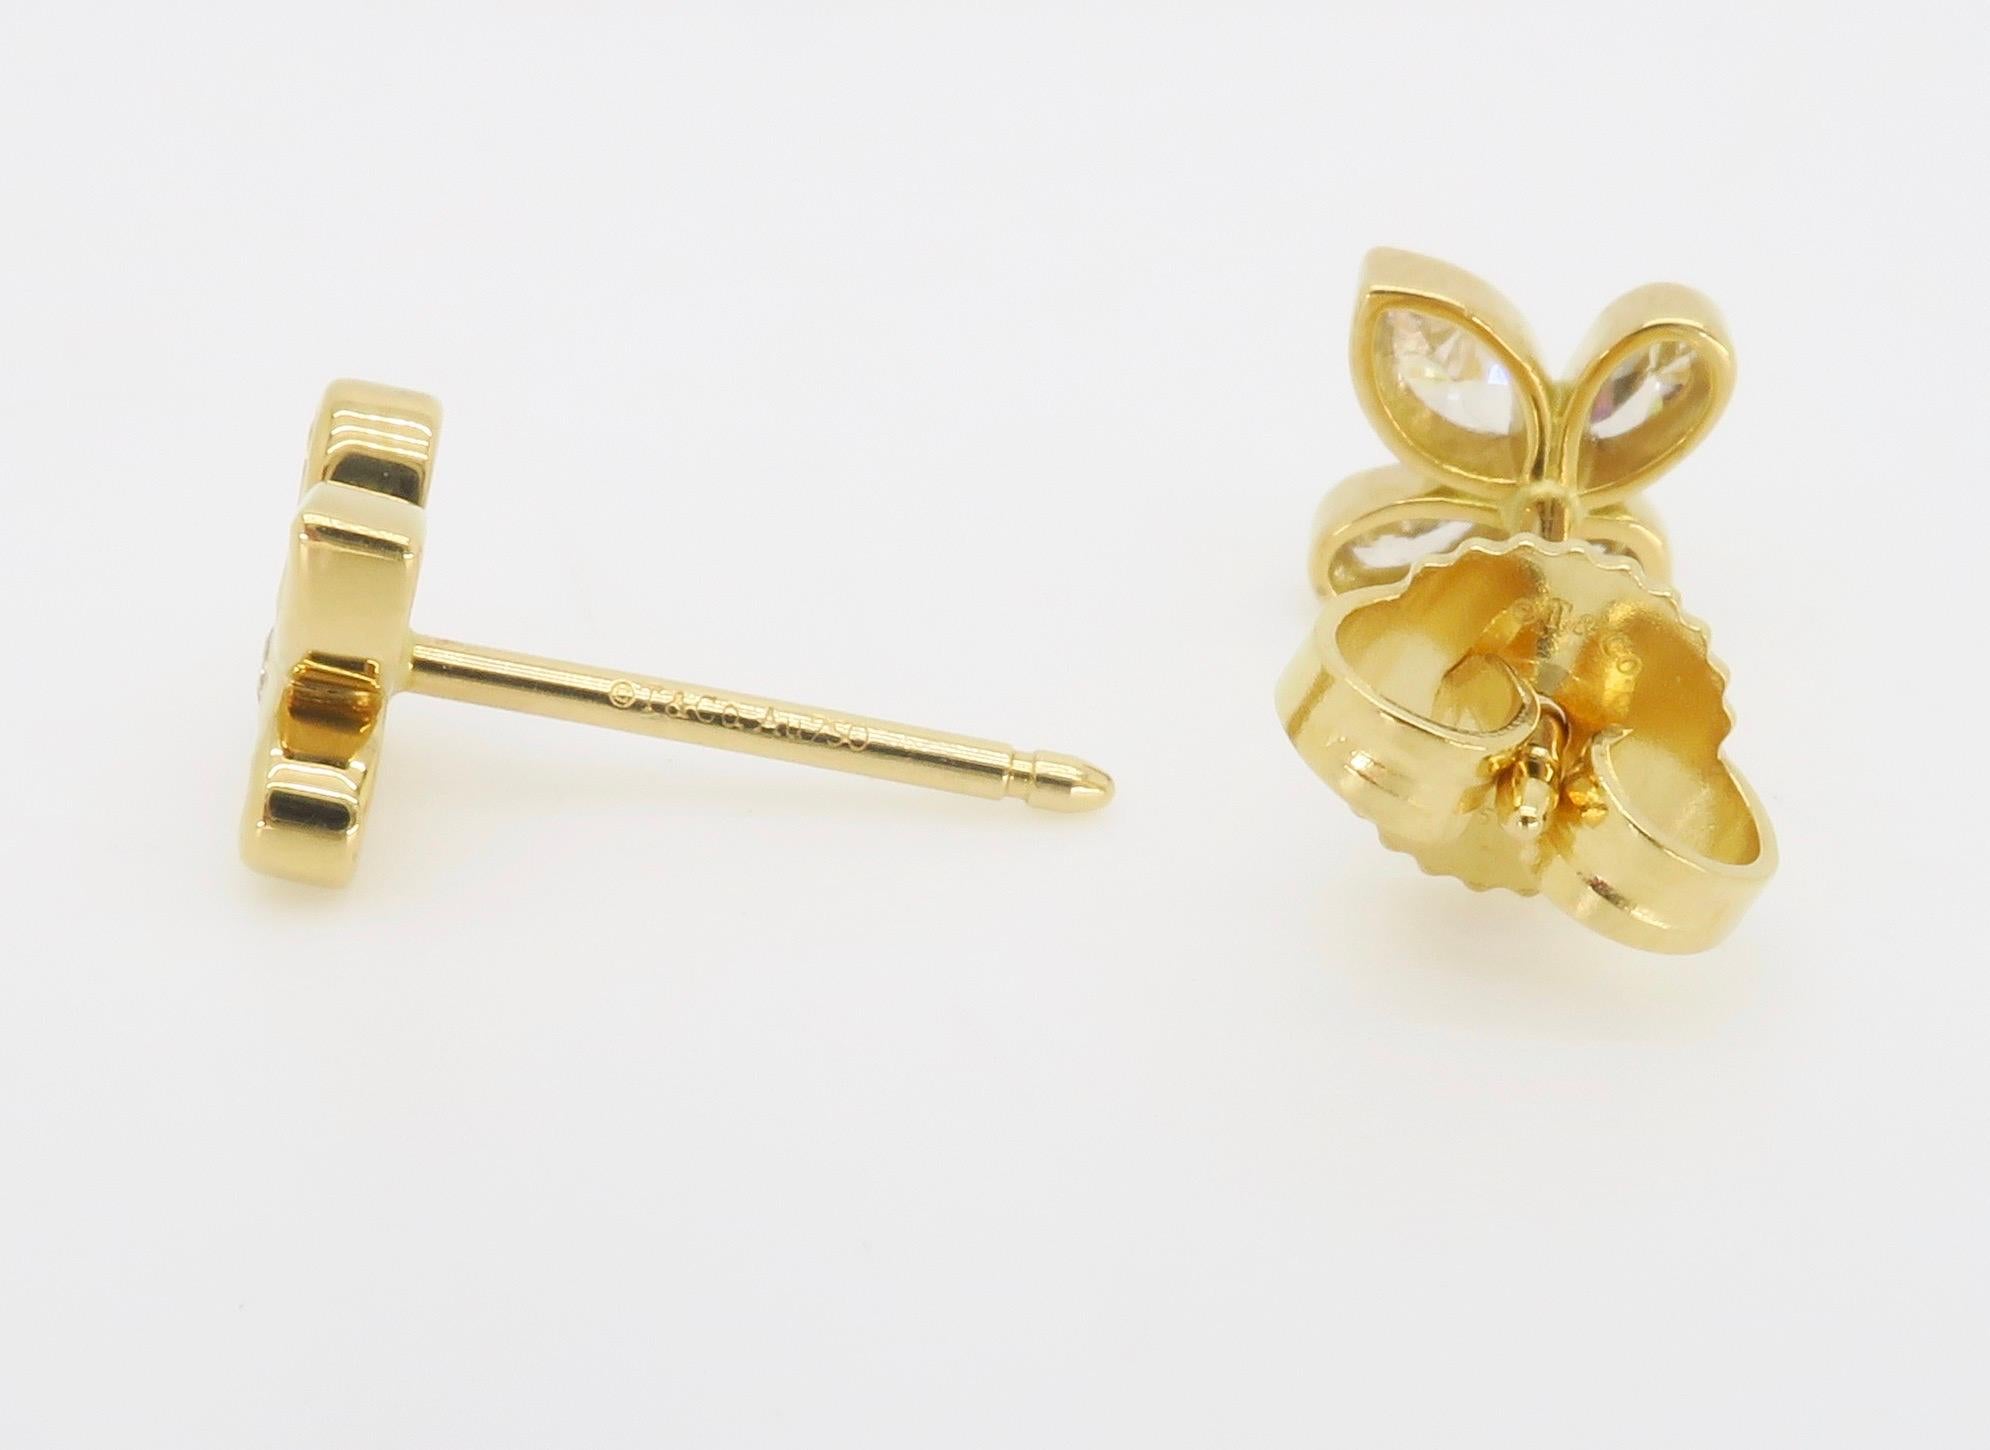 Mixed Cut Tiffany & Co. Fleur de Lis Diamonds stud earrings in 18k